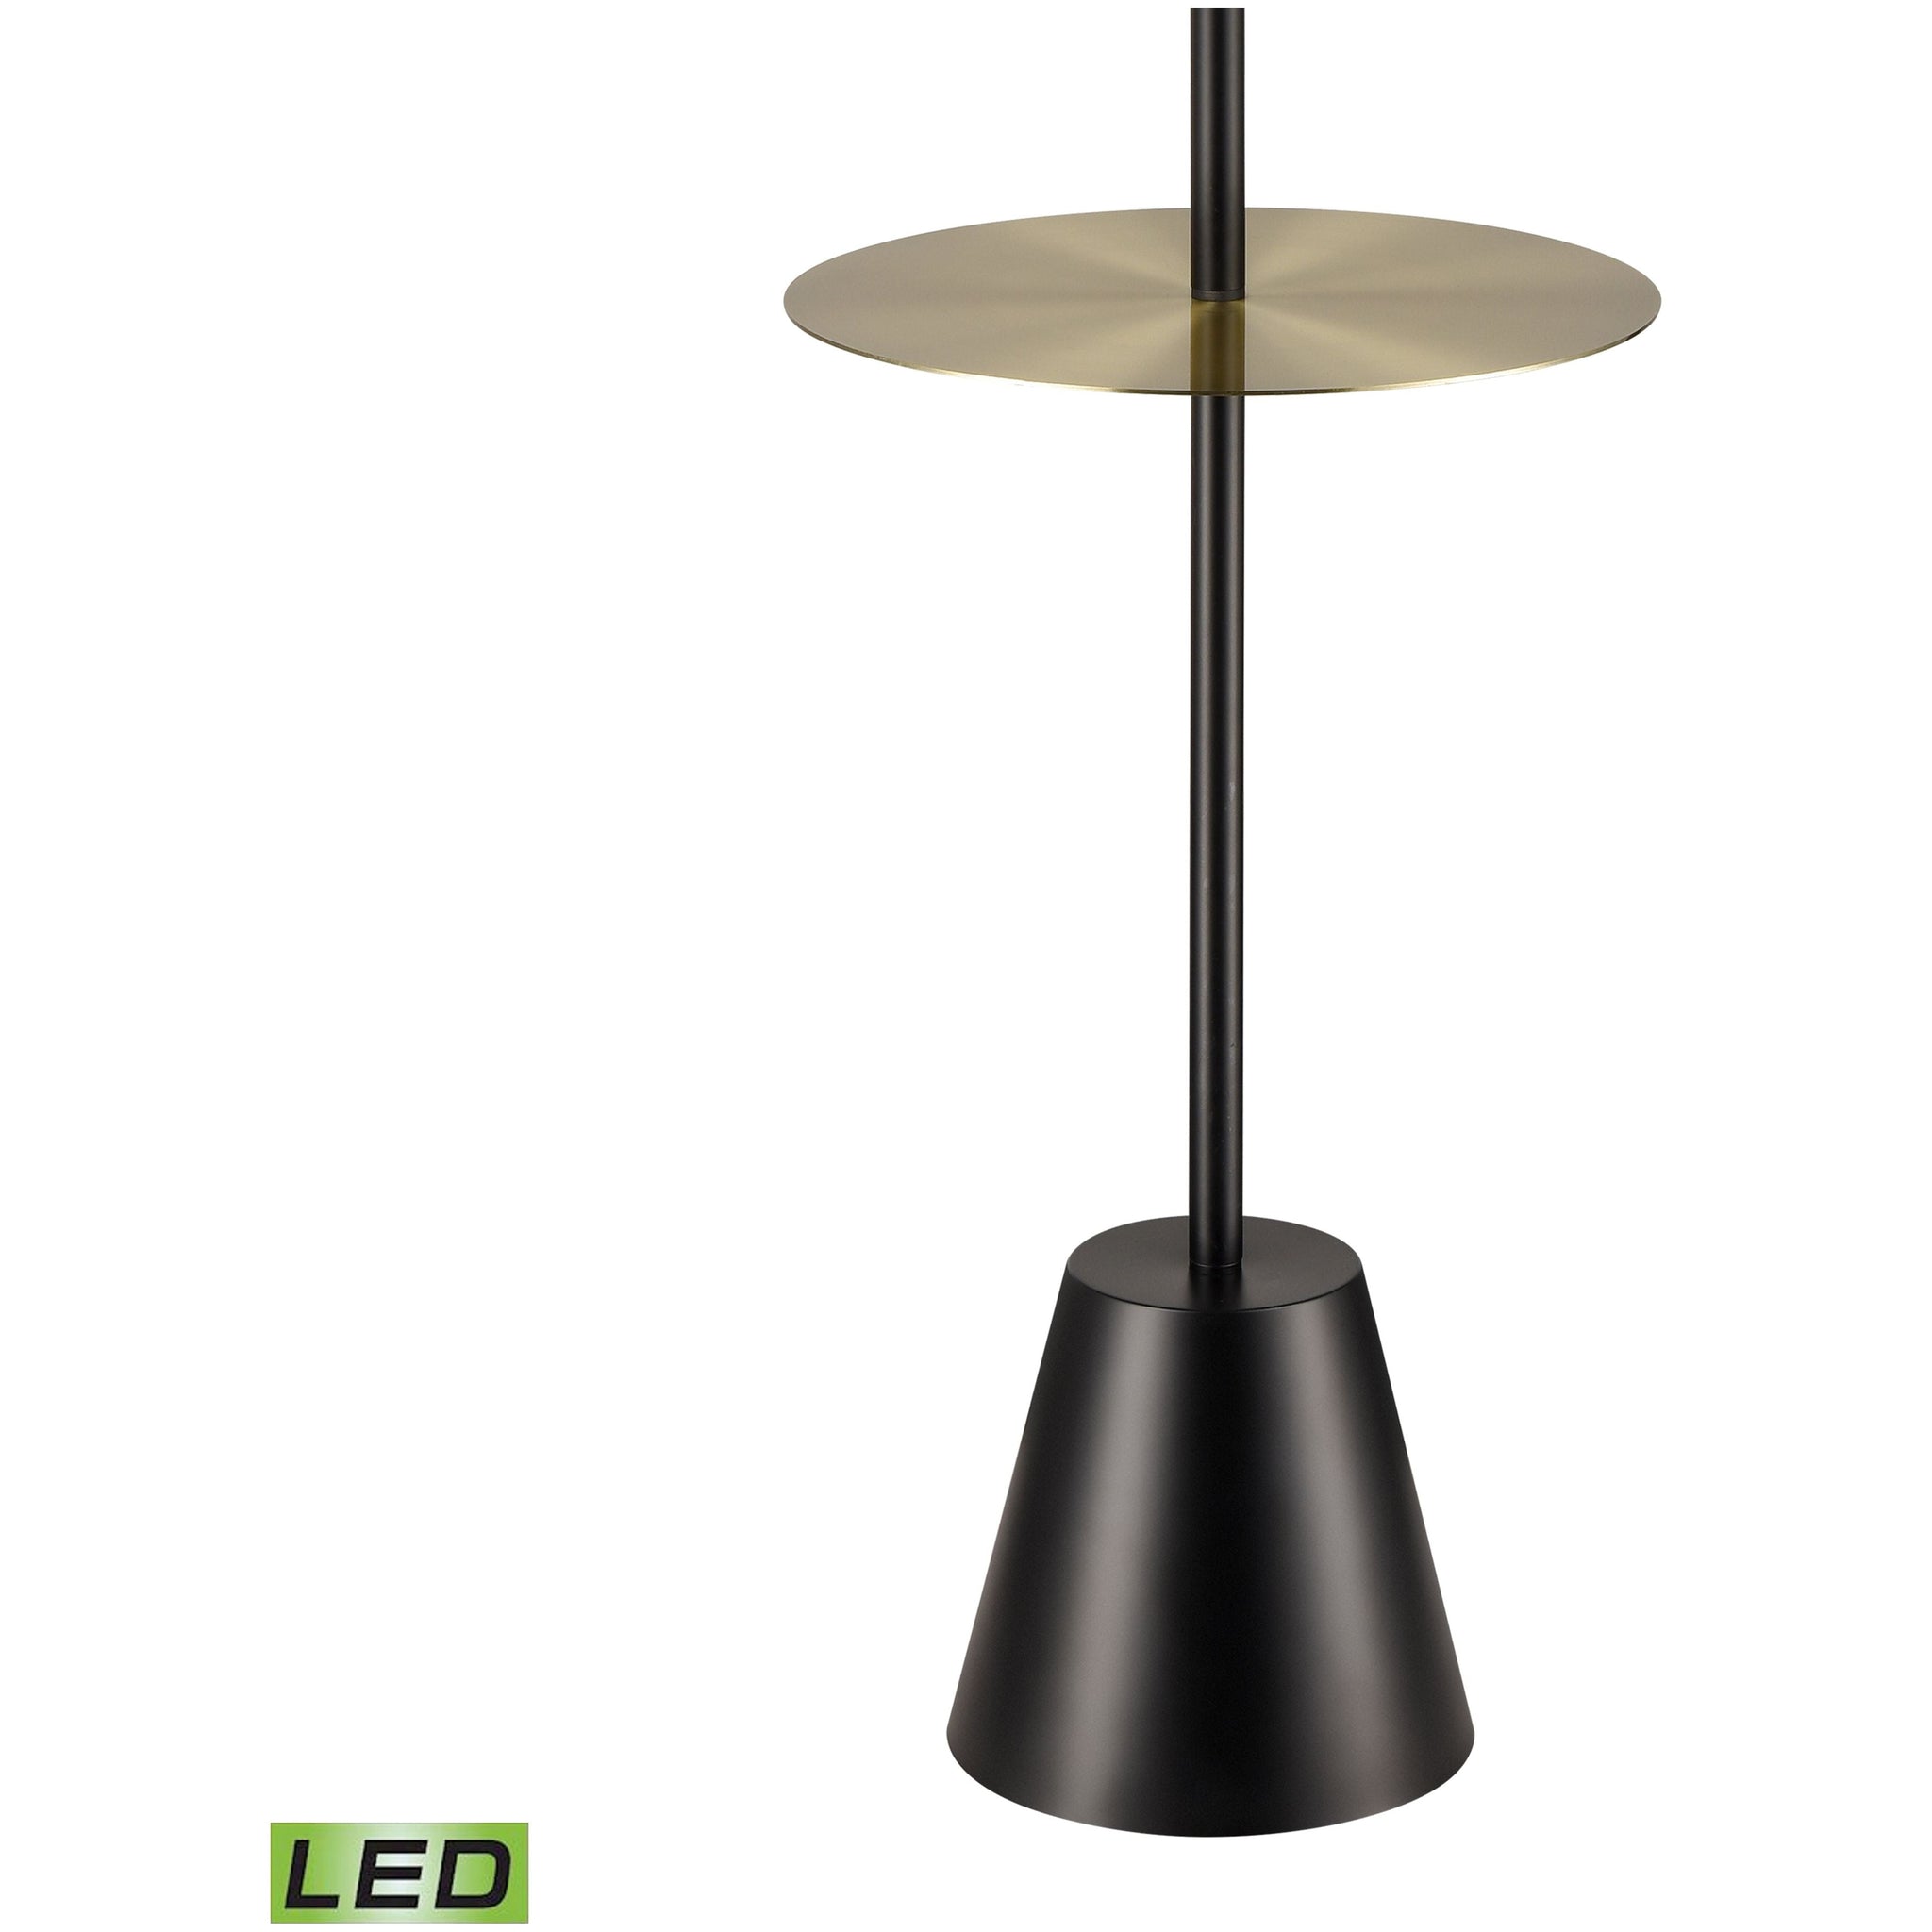 Abberwick 64" High 1-Light Floor Lamp